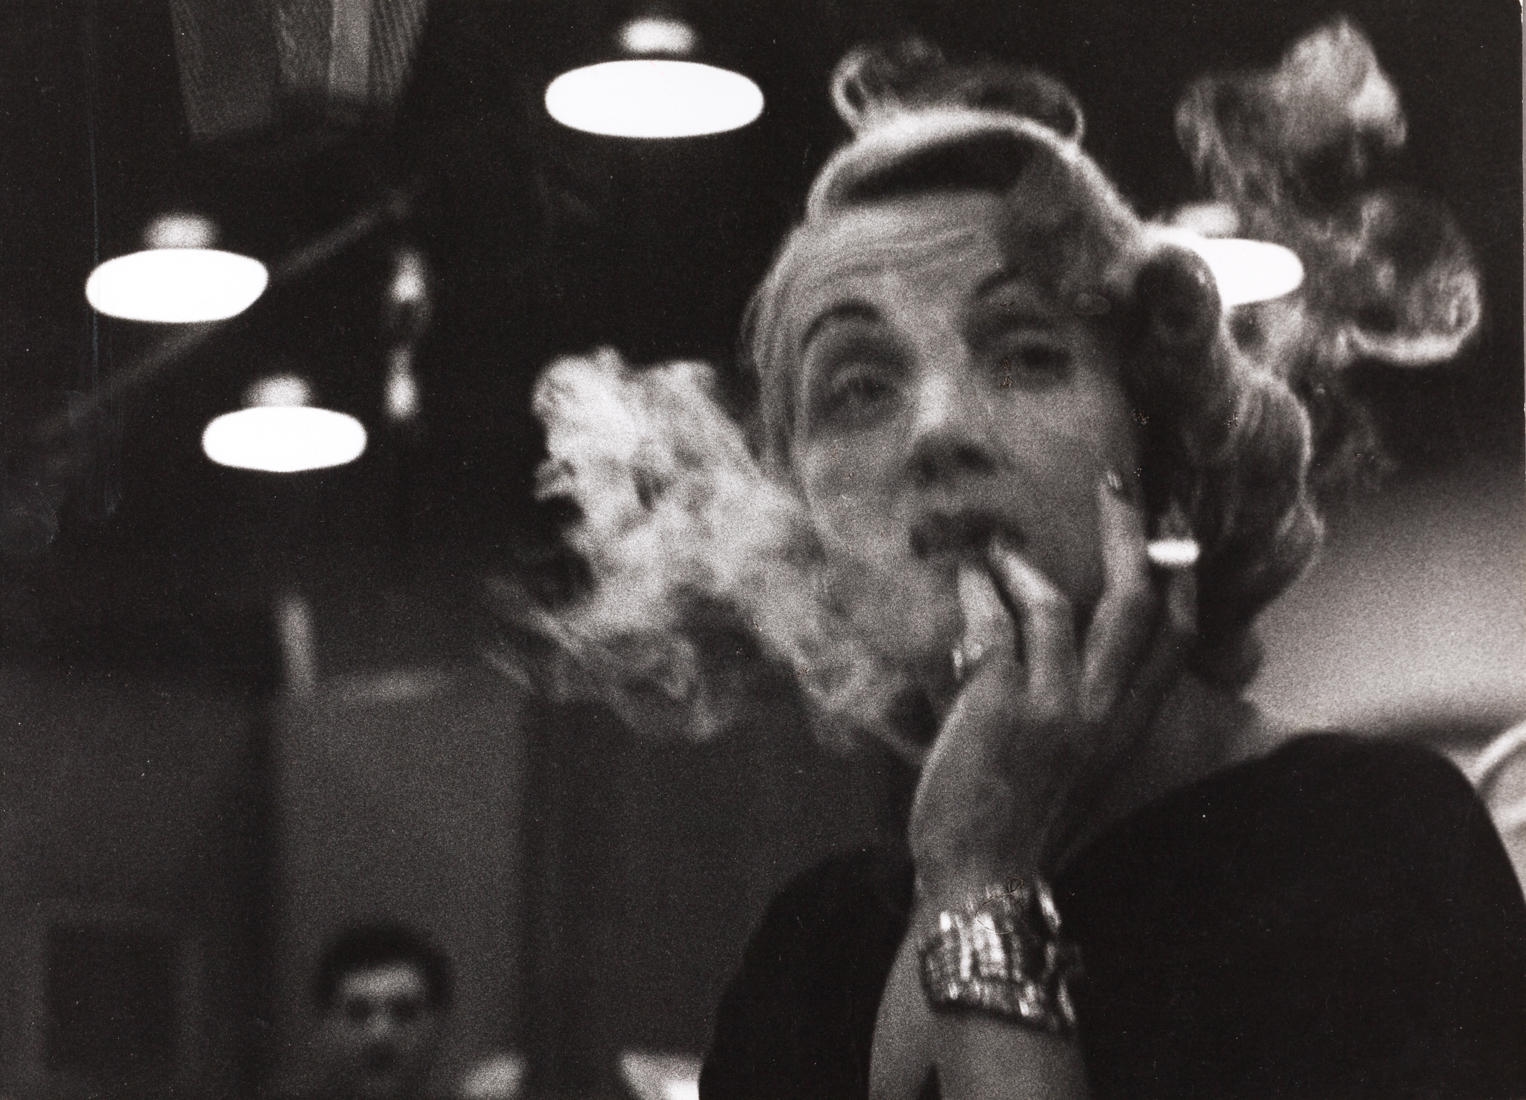 Marlene Dietrich, New York by Eve Arnold, 1952